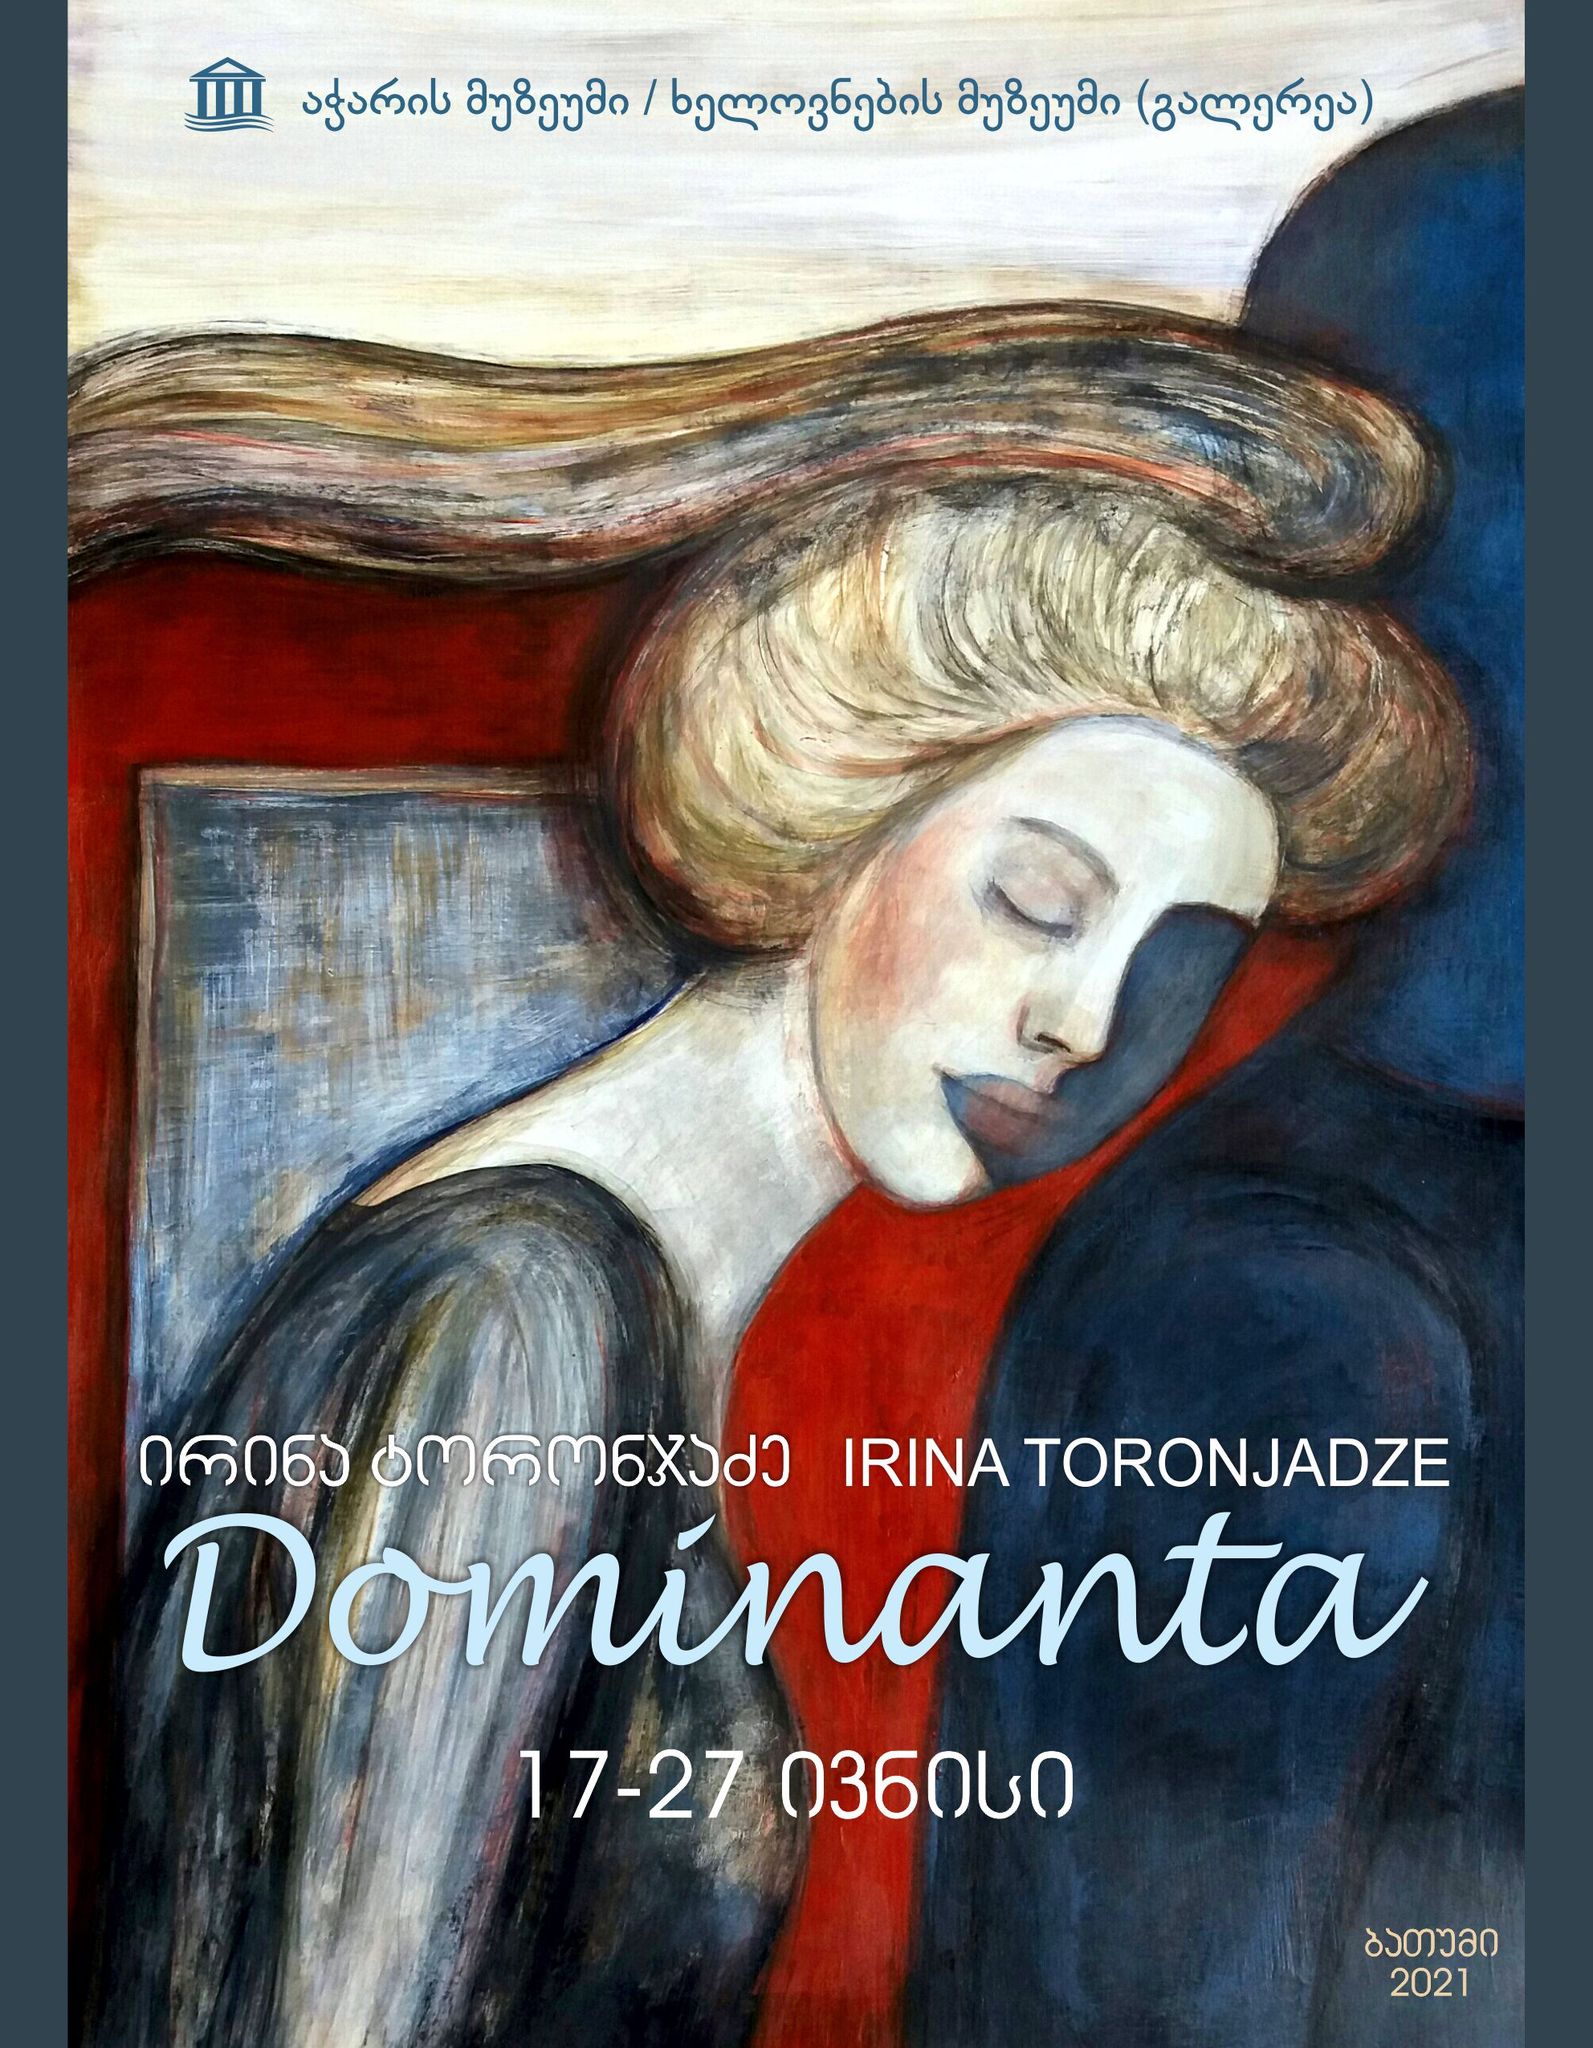 ირინა ტორონჯაძის პერსონალური გამოფენა - “Dominanta”(17-28.06.2021)